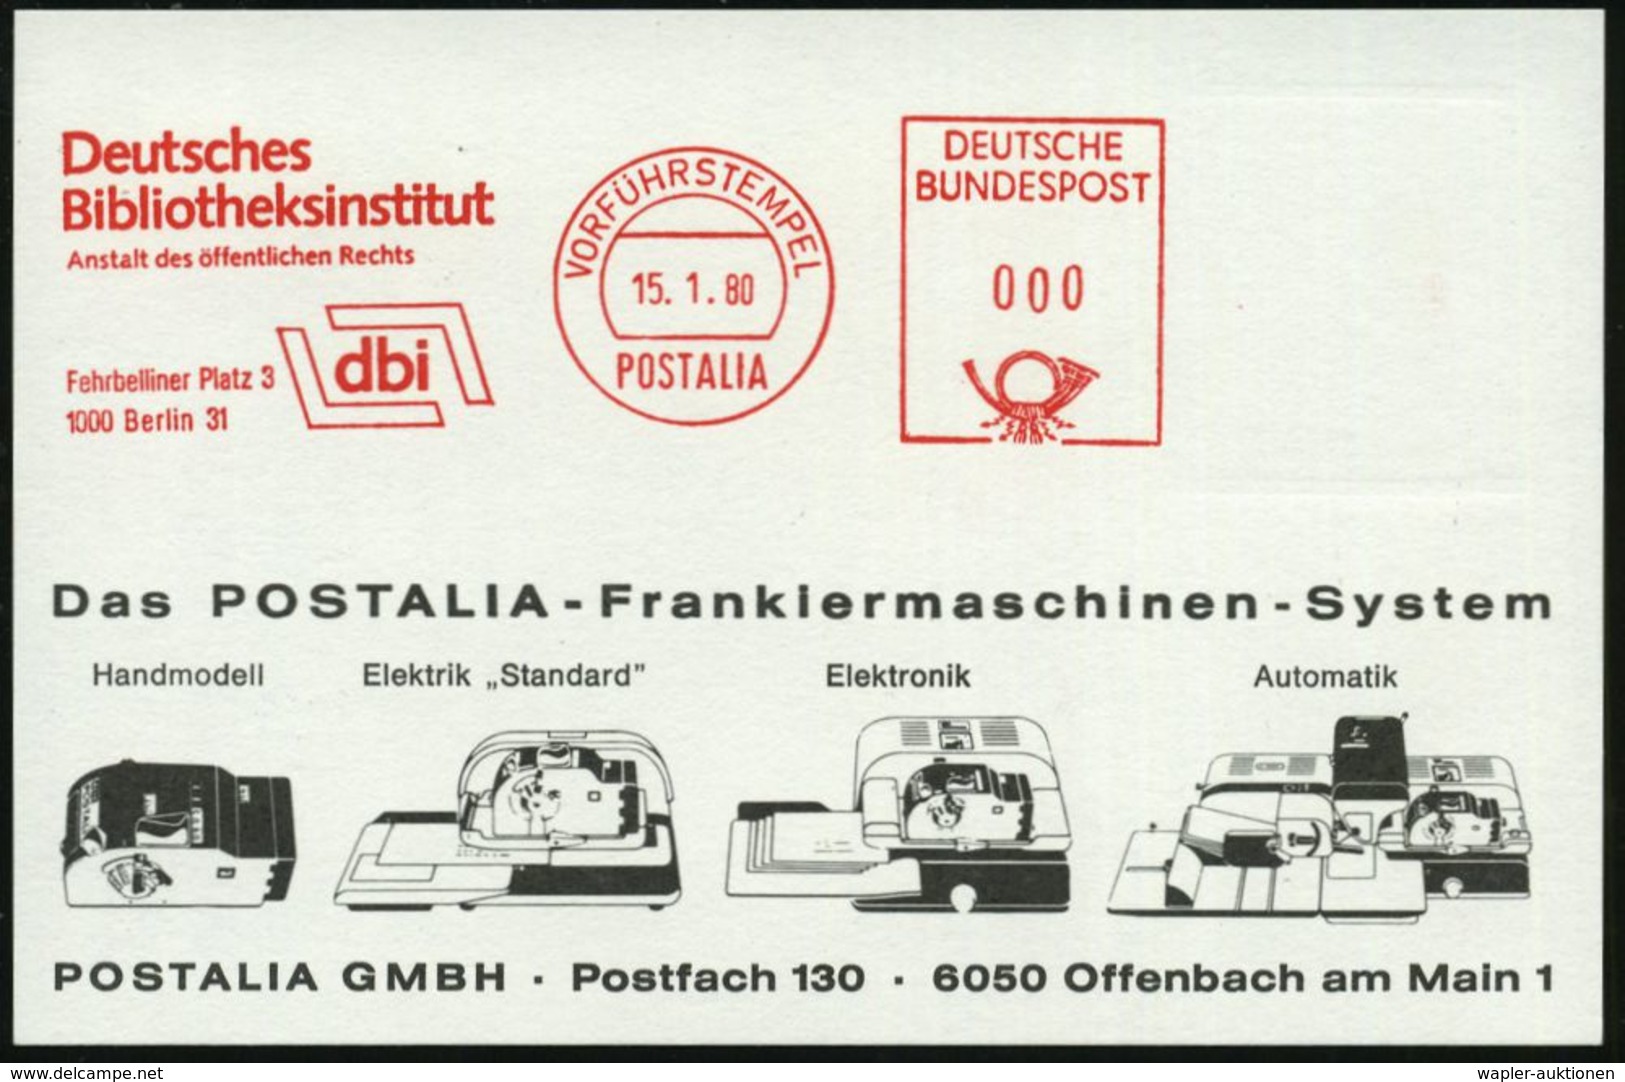 1000 Berlin 31 1980 (Jan.) AFS: VORFÜHRSTEMPEL/POSTALIA/Deutsches/Bibliotheksinstitut/dbi/Fehrbelliner Platz 3.. (Logo)  - Zonder Classificatie